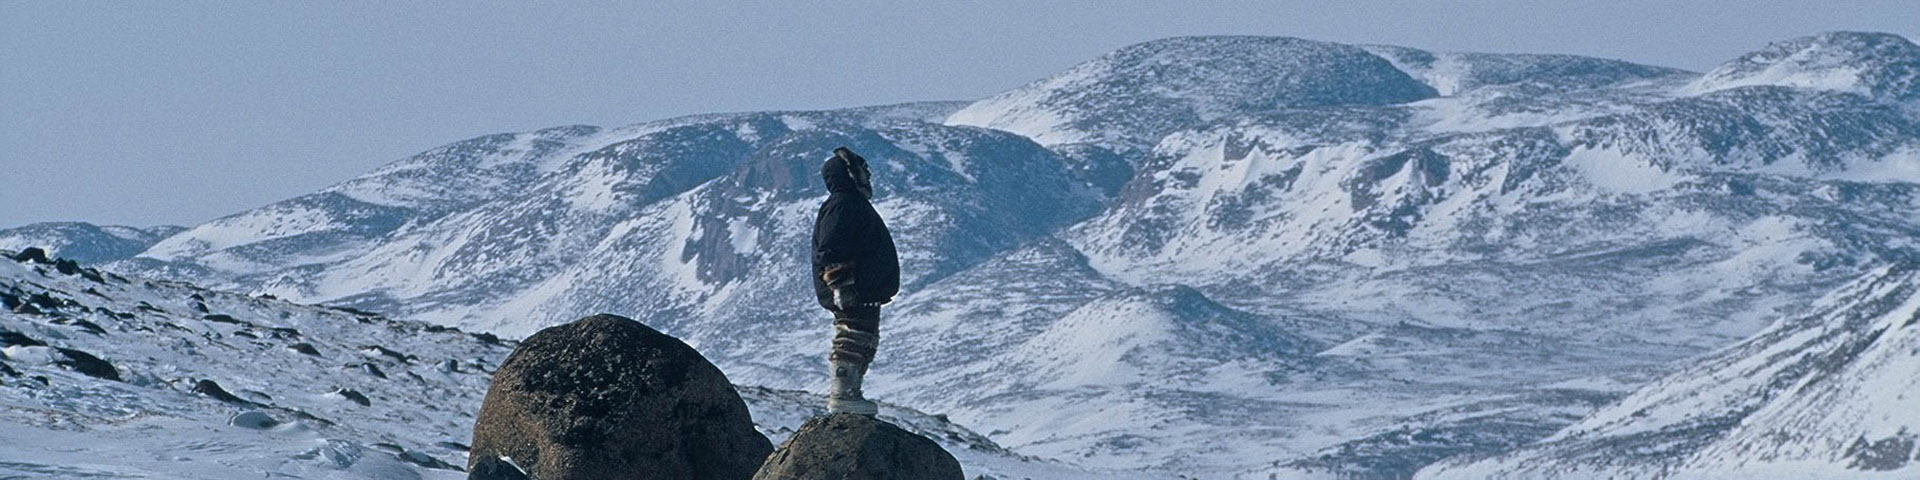 Un homme vêtu d'une parka se tient sur un gros rocher, entouré de montagnes et de paysages enneigés.